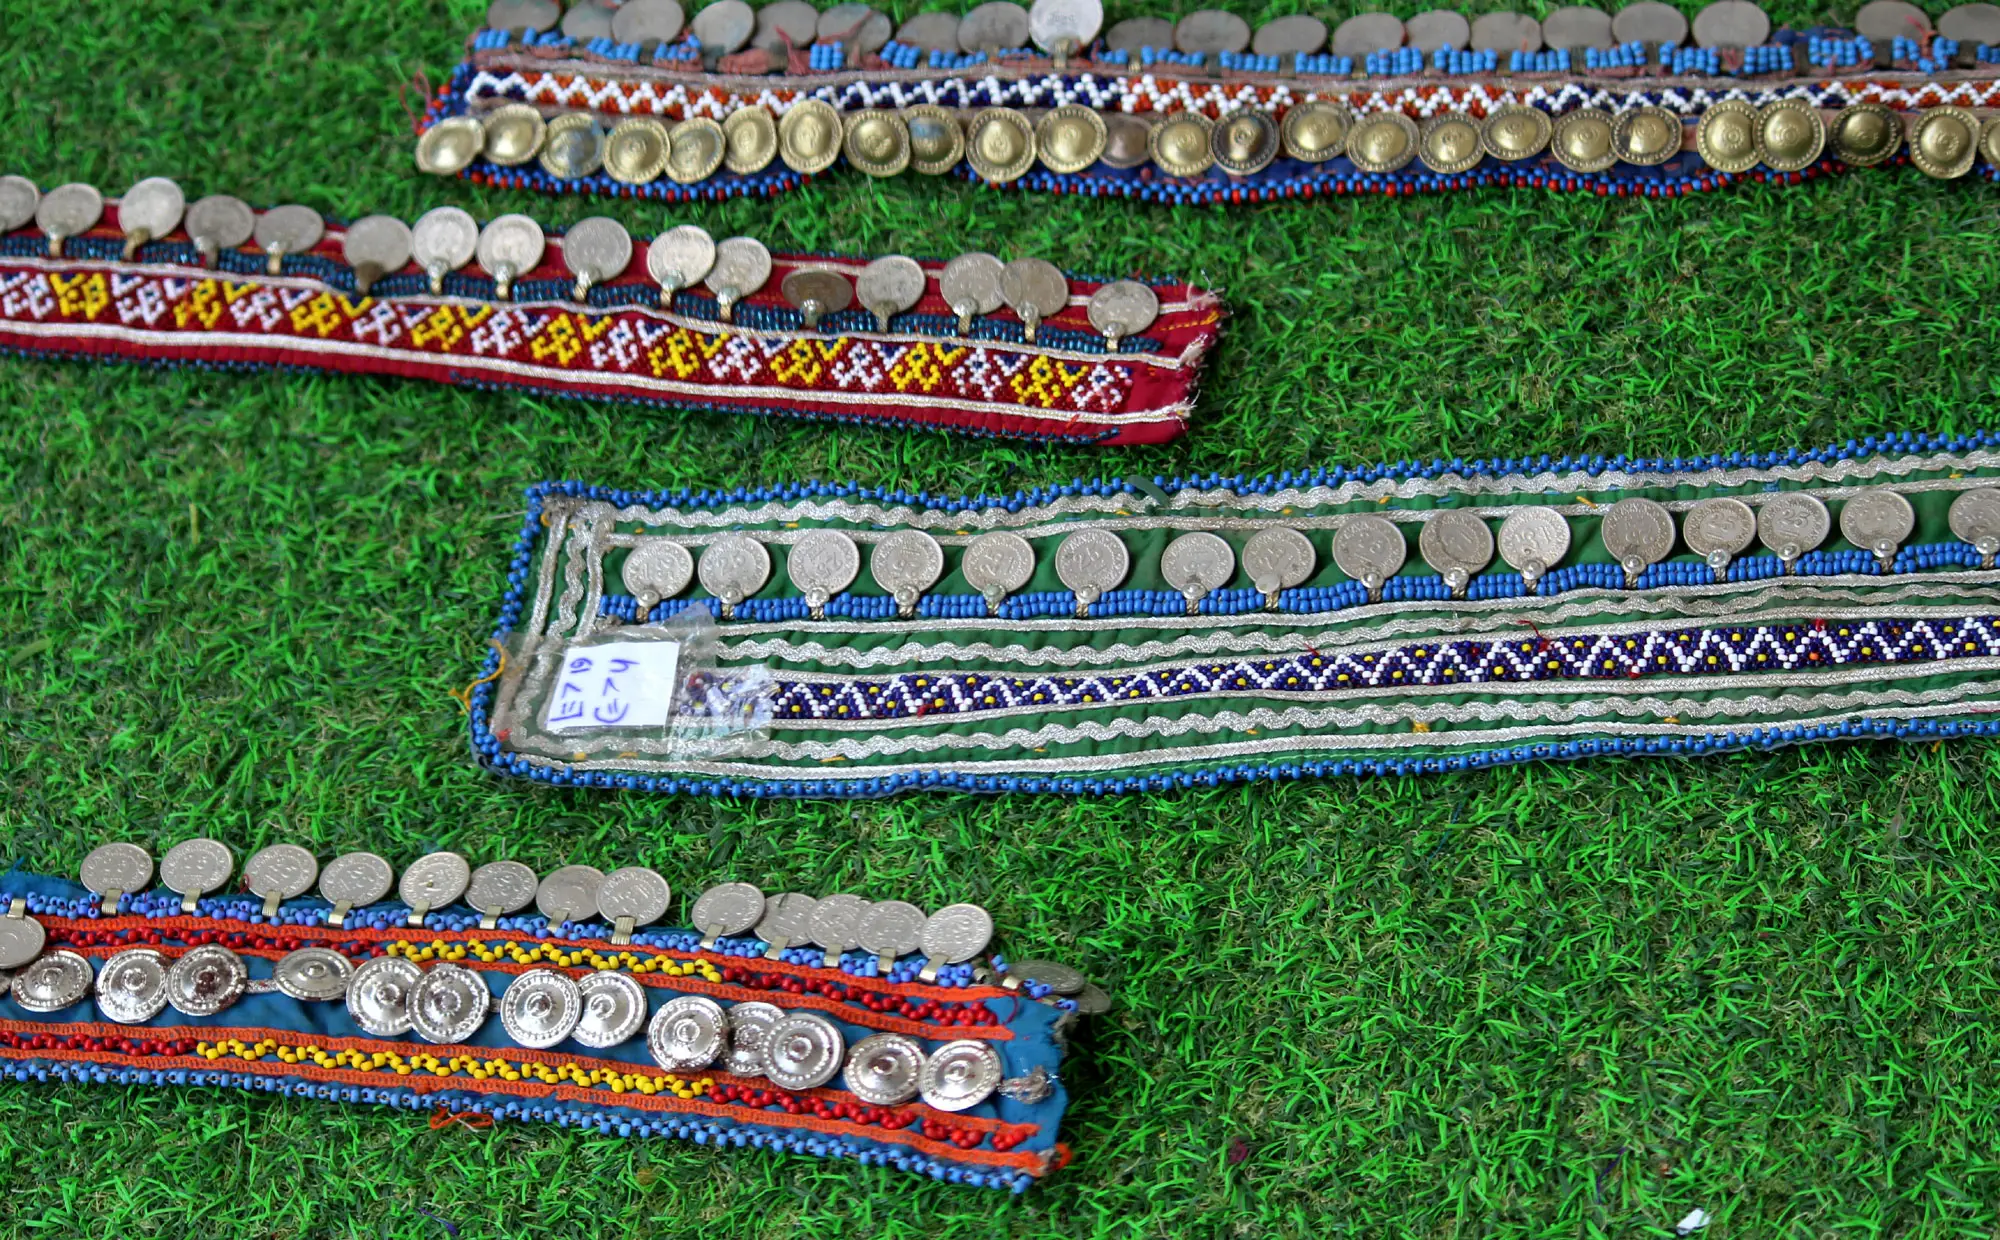 Banjara-حزام قديم هندي قديم, حزام قديم للعملات المعدنية